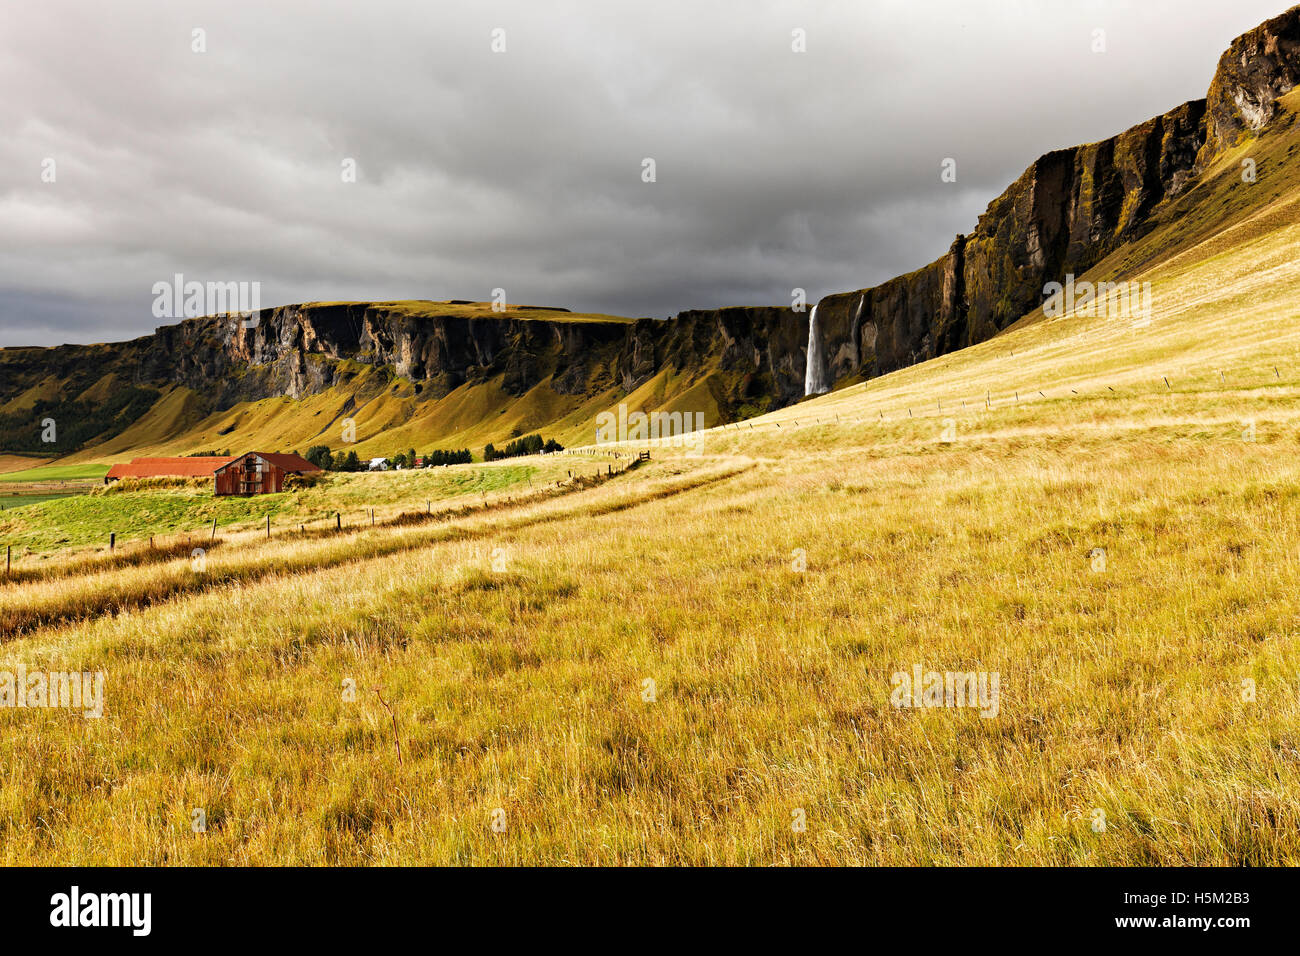 Hangar agricole dans paysage de montagnes (falaises) avec cascade, au Sud Est de l'Islande, de l'Atlantique Nord, Europe Banque D'Images